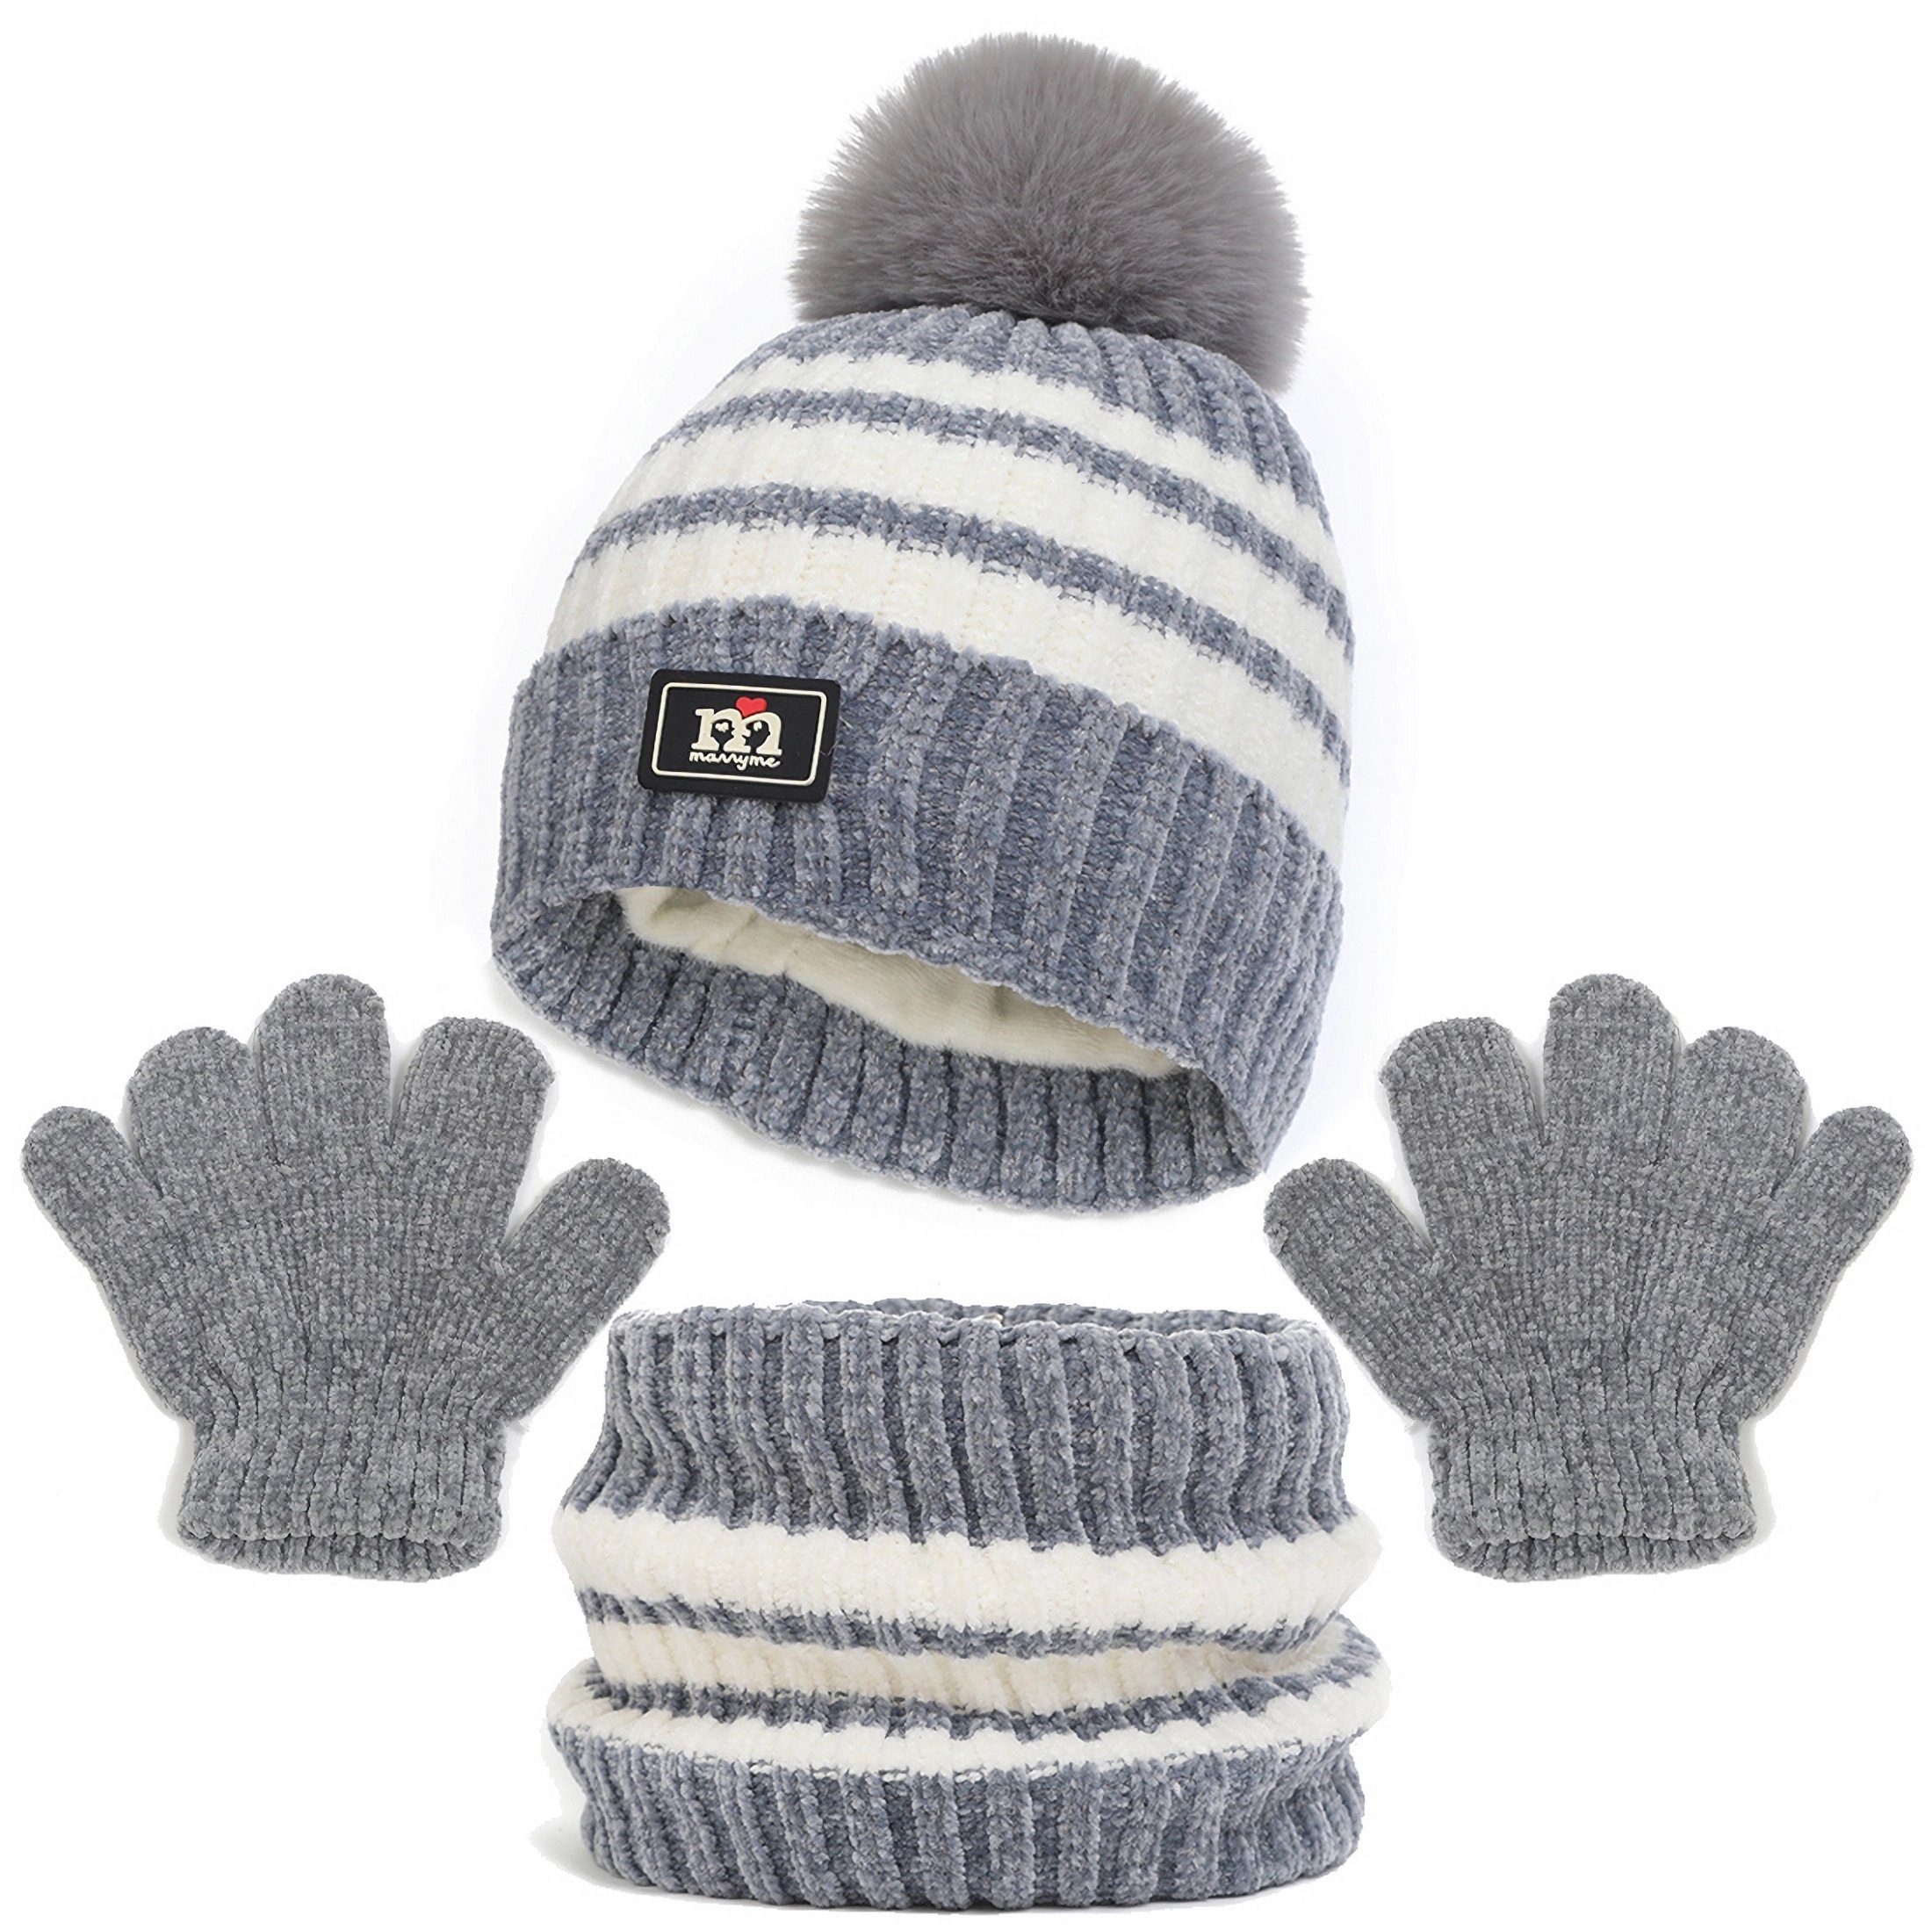 Coonoor Filzhut Mütze & Schal Kinder Unisex Schal Mütze Handschuhe Set (Wintermütze, Schal, Handschuhe, dreiteiliges Set) Grau